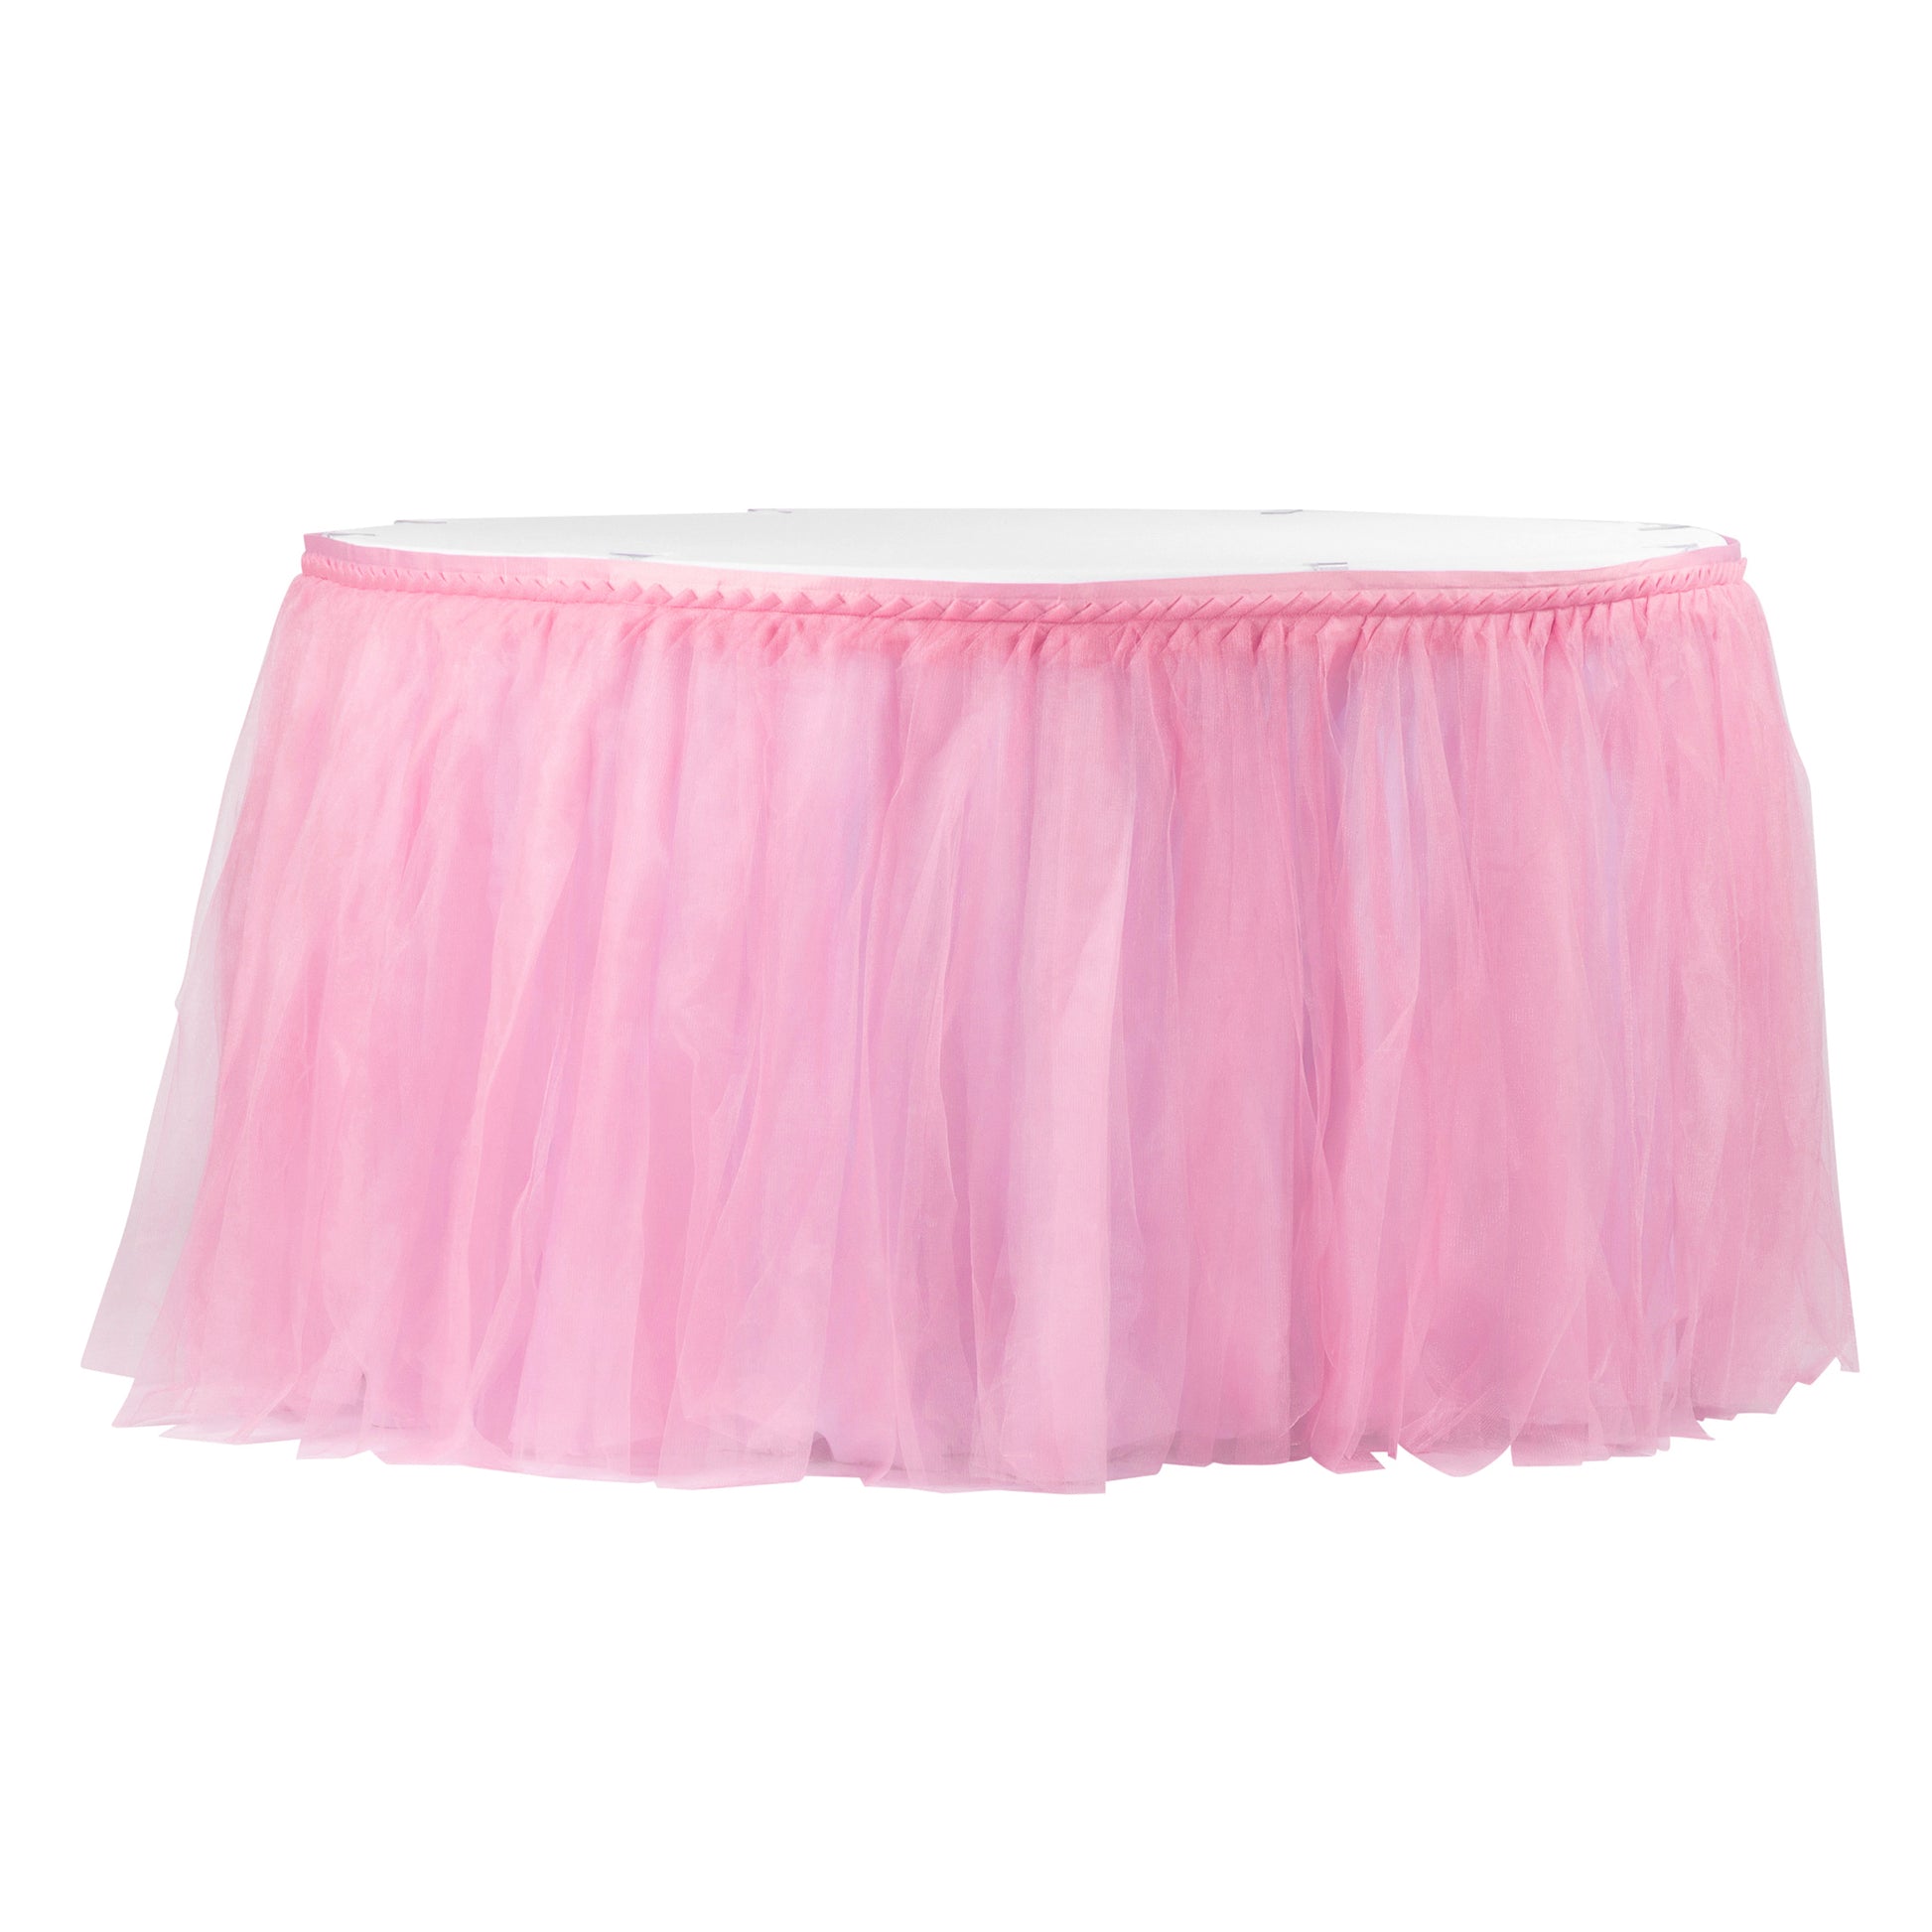 Tulle Tutu 17ft Table Skirt - Pink - CV Linens